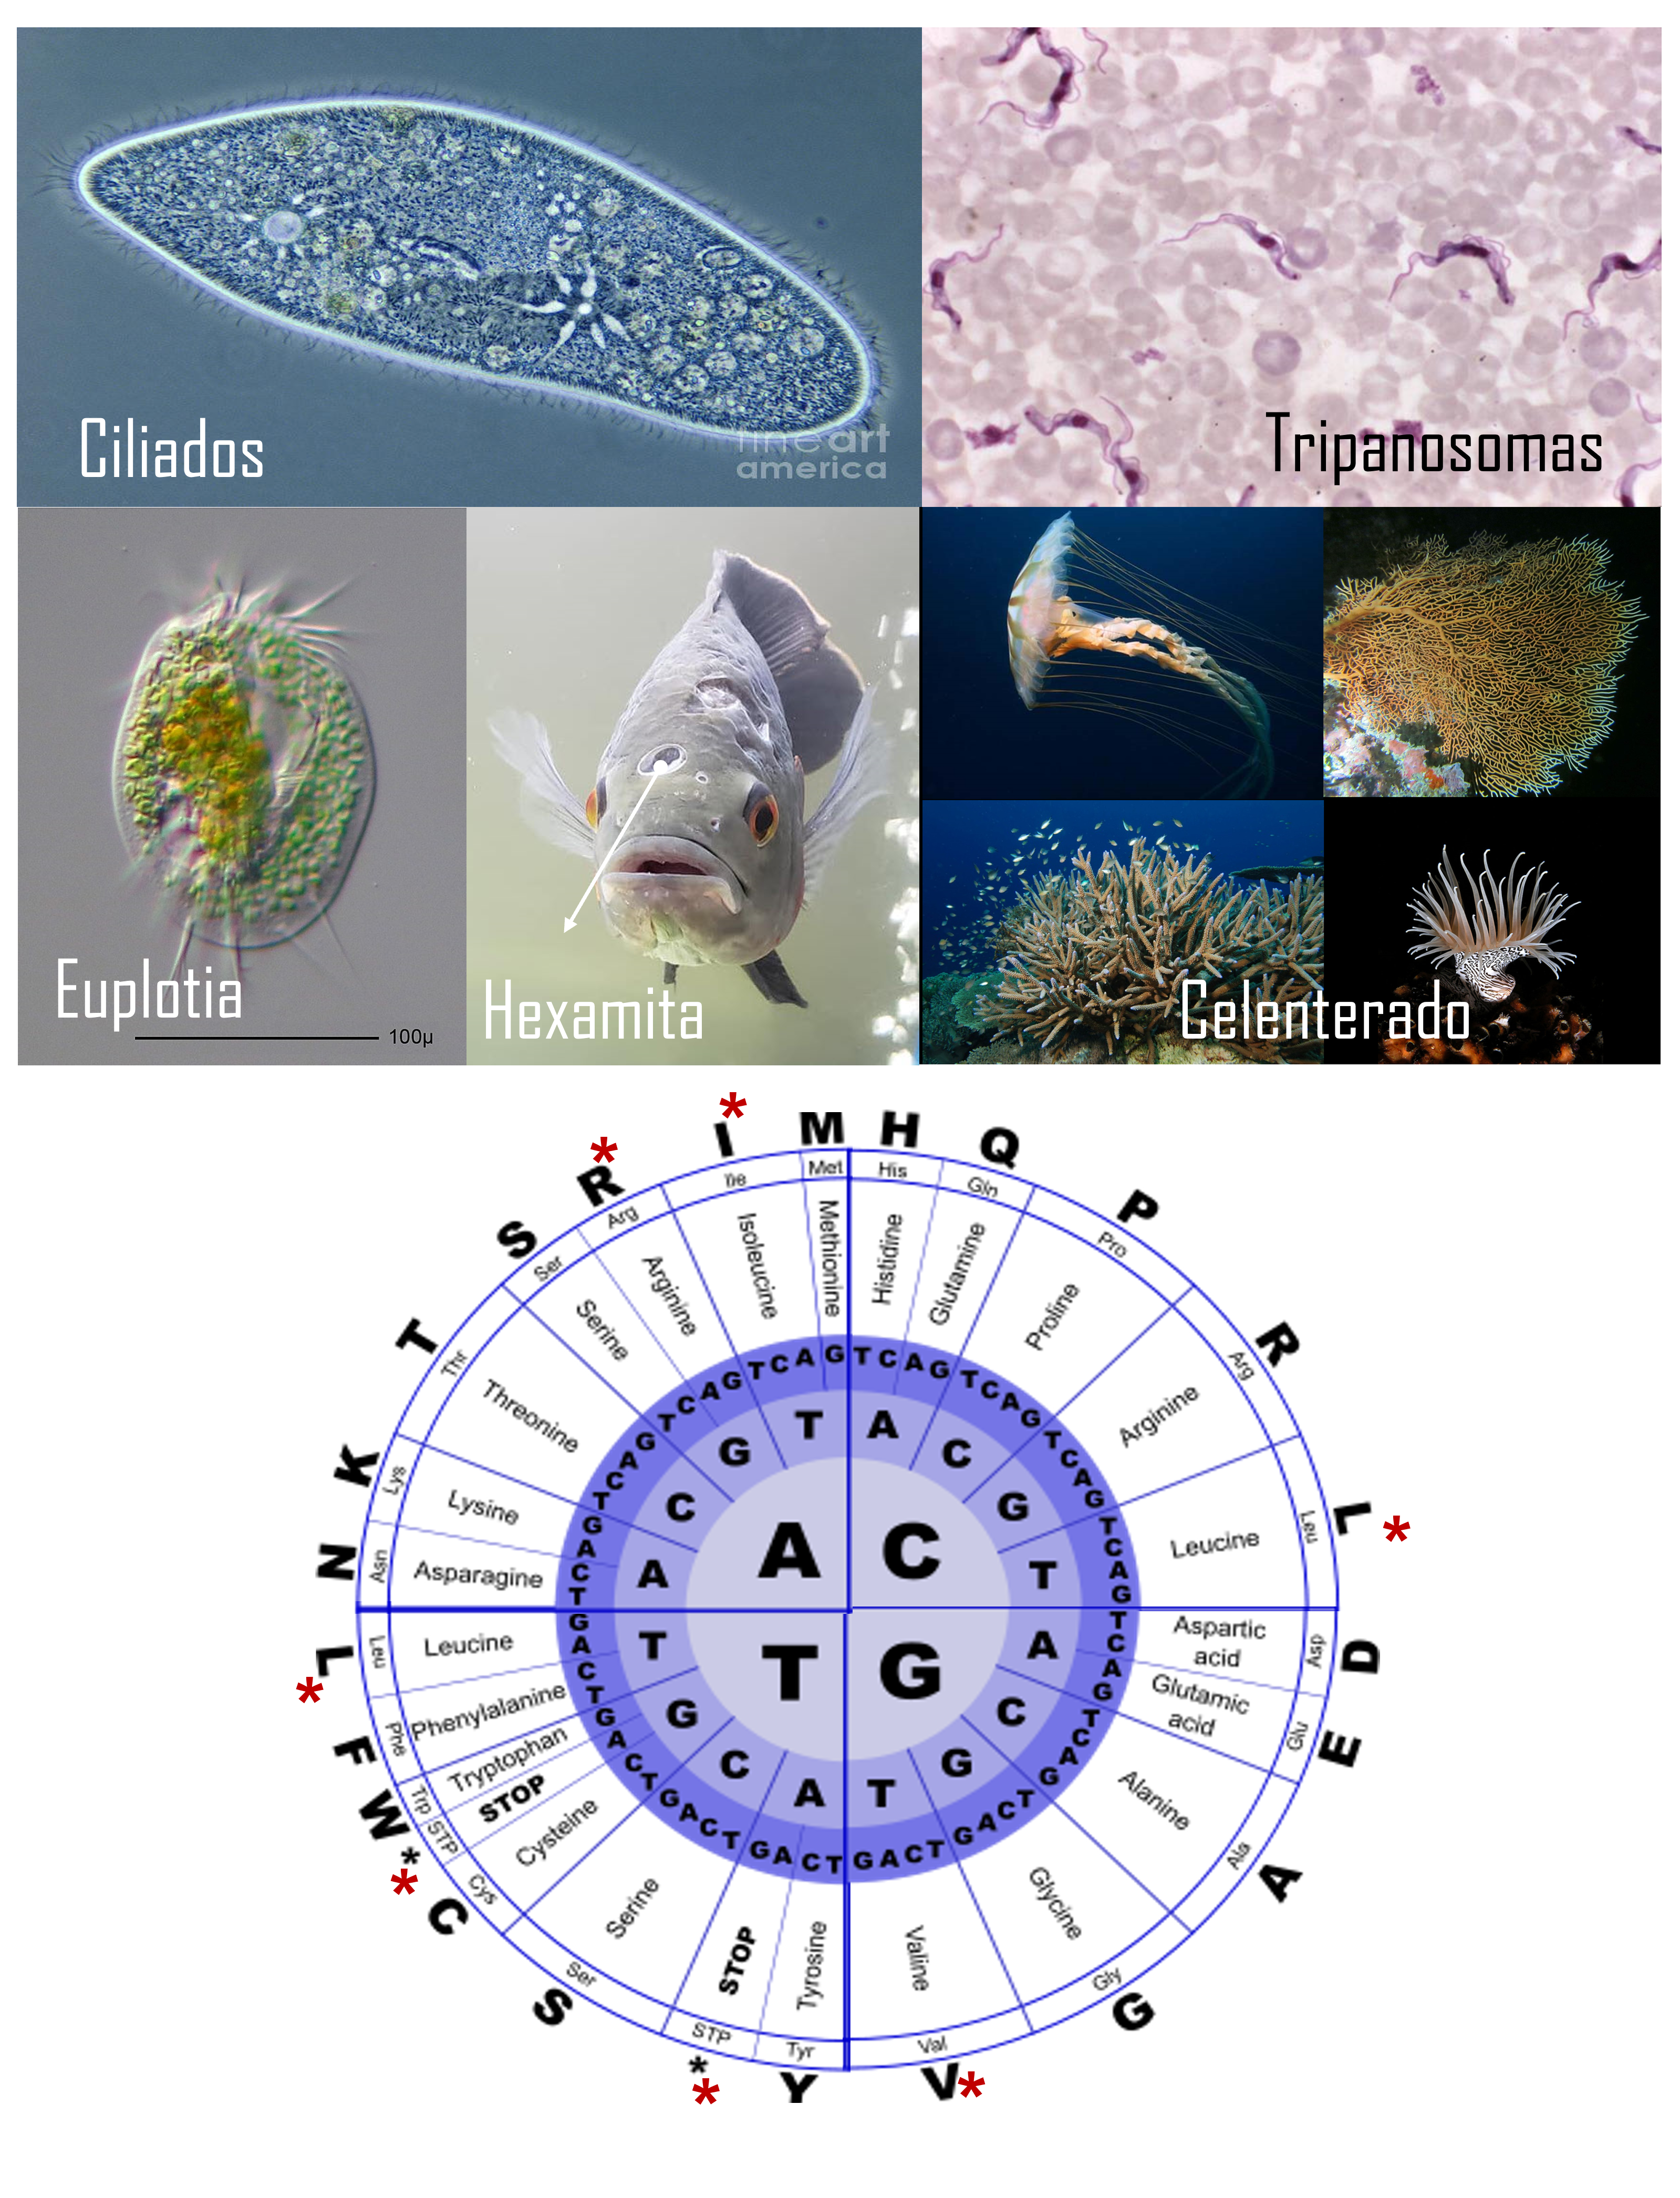 El código genético tiene 25 variaciones, en la figura se ilustran diferentes organismos eucariontes en los que se han detectado dichas variaciones. Los euplotia y ciliados para la traducción de ARNs mensajeros provenientes del núcleo emplean por ejemplo el código X o VI, este último es el mismo código de los Hexamitas, famosos parástiso de peces de acuarios. Los protozoarios Tripanosomas y los invertebrados marinos, los celenterados emplean en los kinetoplastidos (mitocondrias modificadas) y las mitocondrias, respectivamente el código IV.